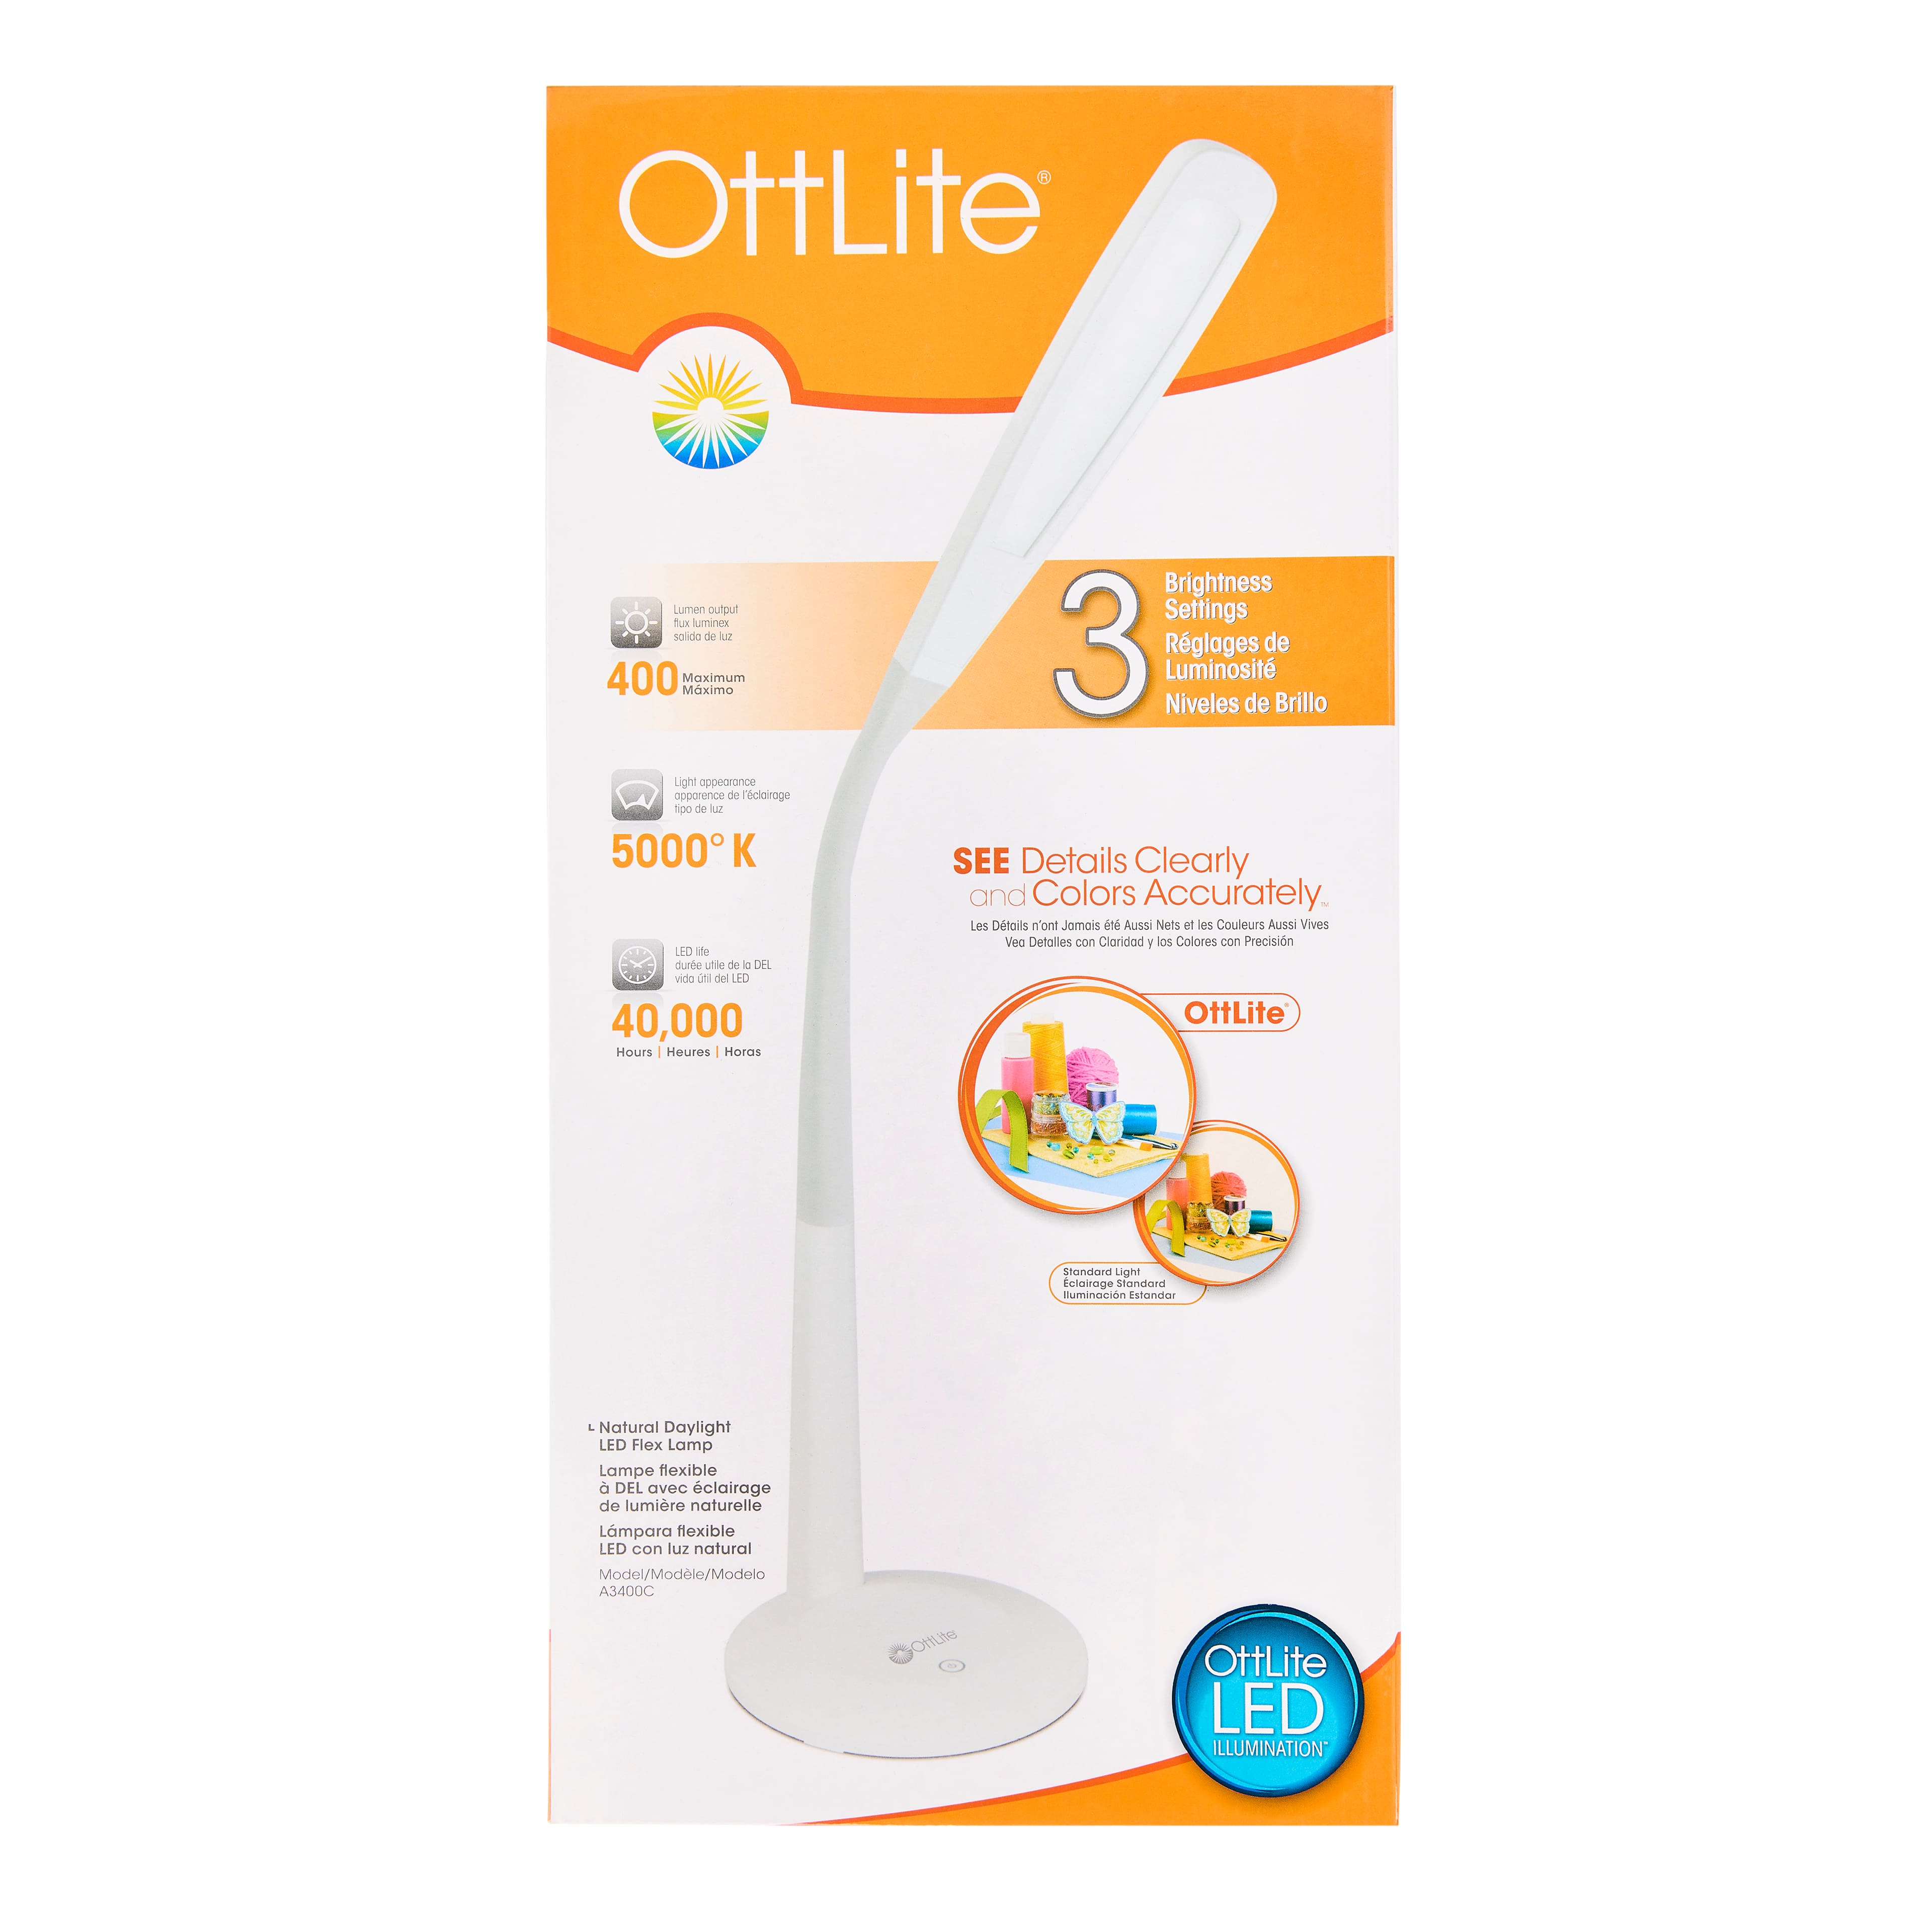 OttLite LED Lighting